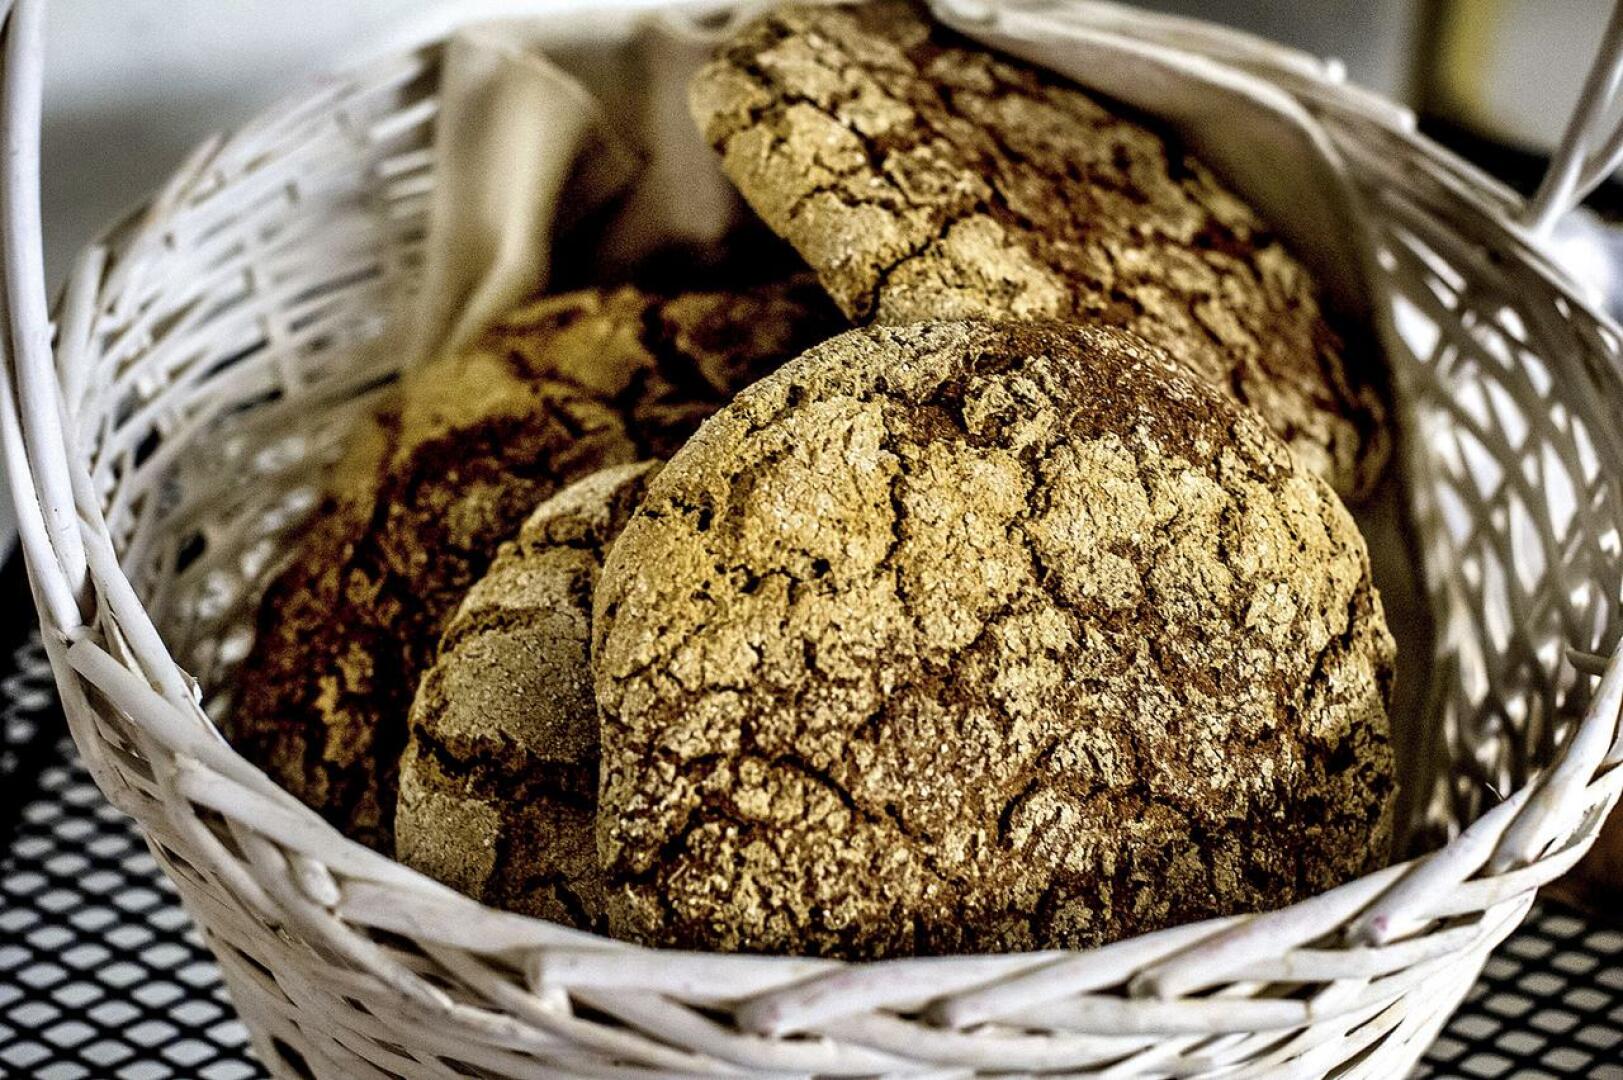 Kärsämäelle kylvetään Rauhanpelto 12. elokuuta. Rauhanpellon jyvistä leivotaan symbolisesti rauhanleipiä. 